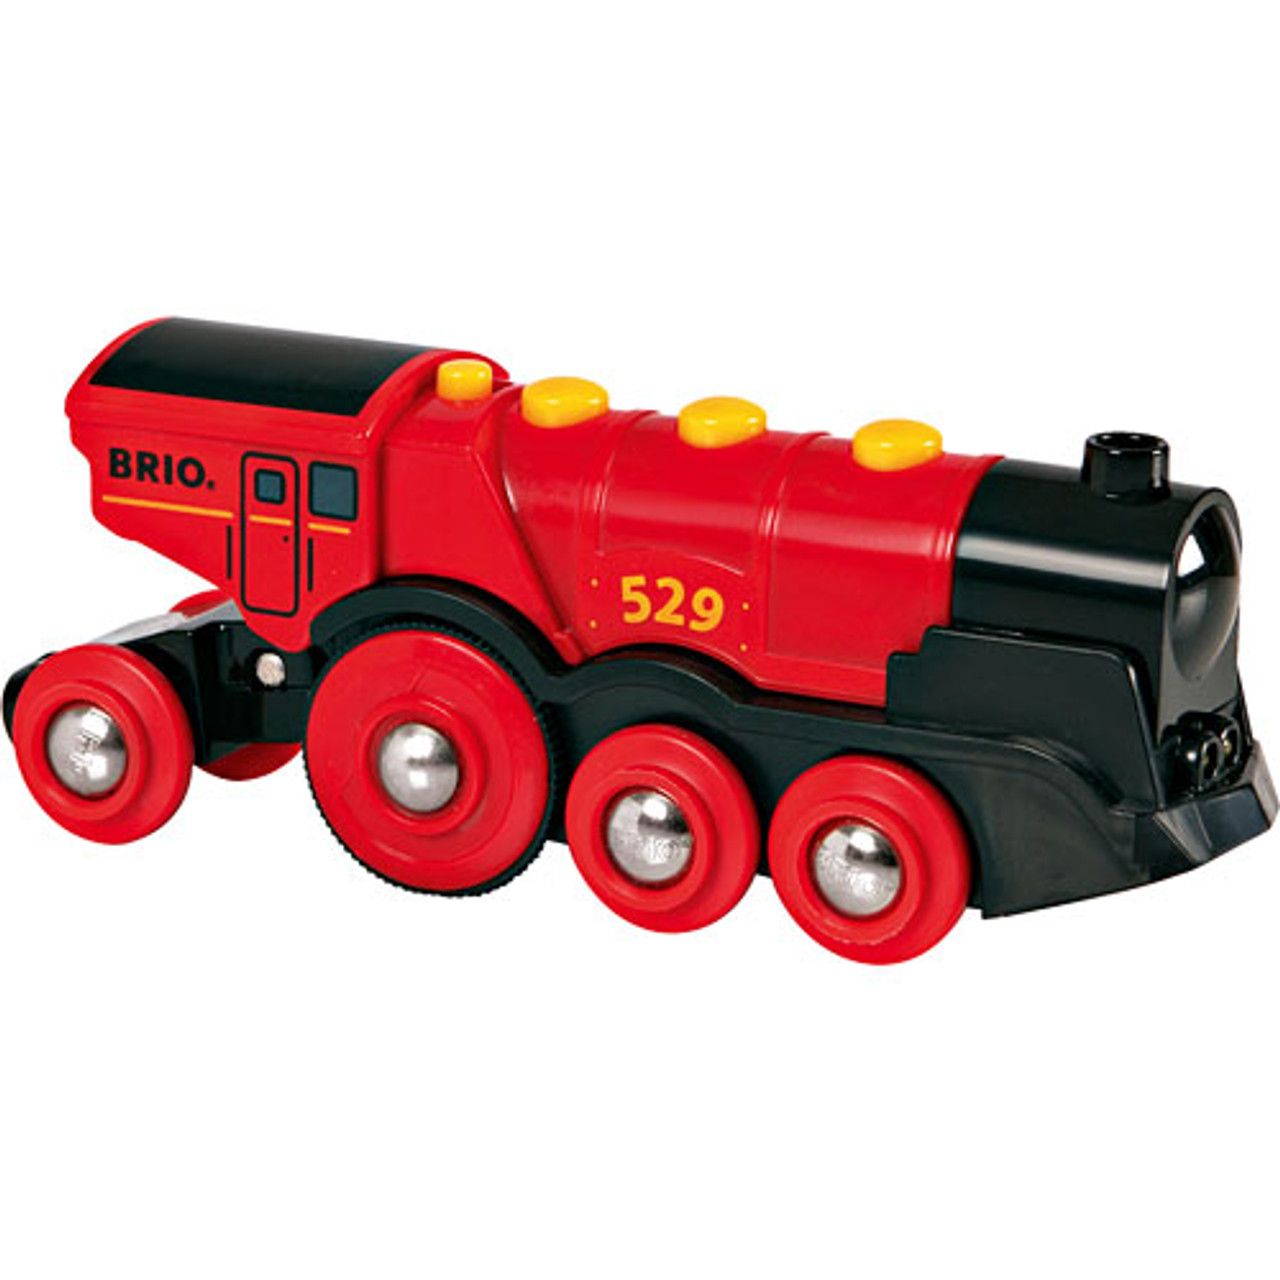 BRIO Mighty Red Locomotive 1